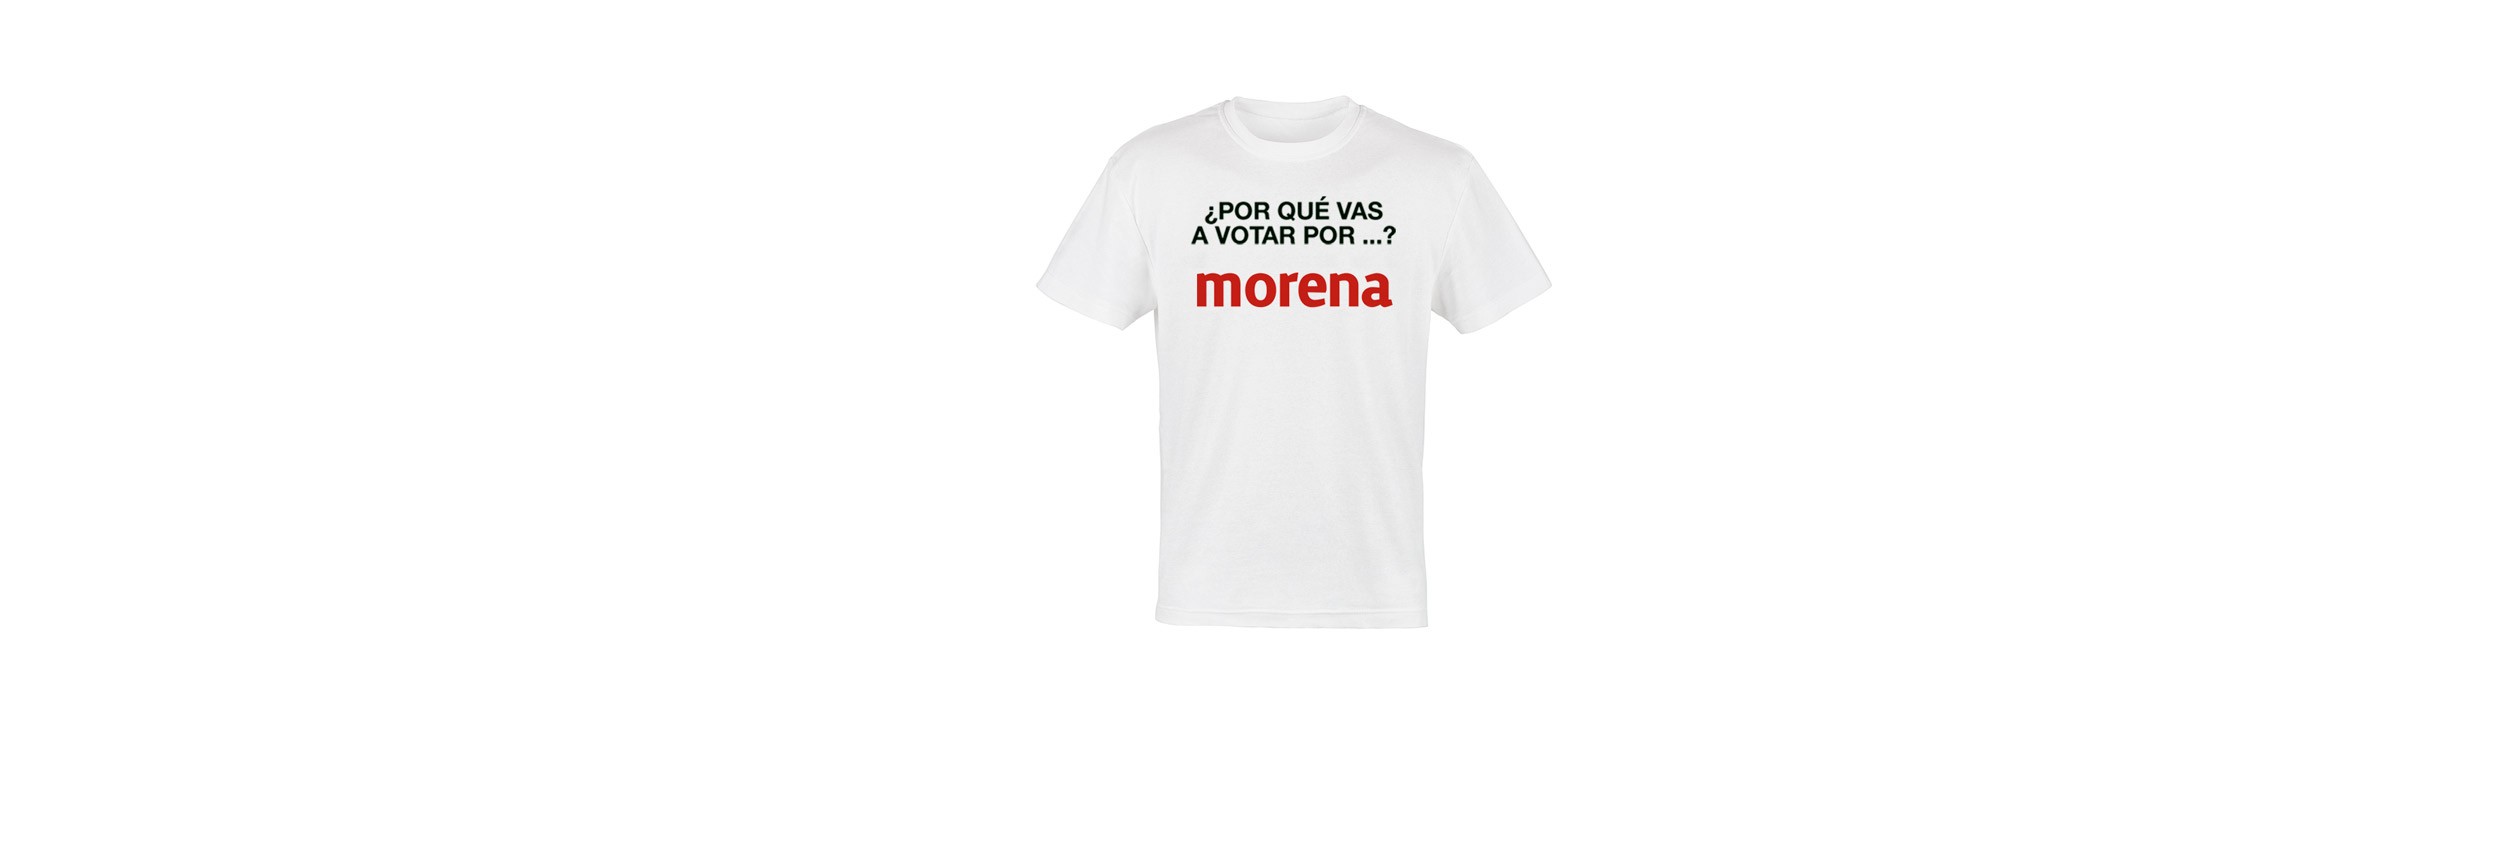 Por qué vas a votar por Morena?